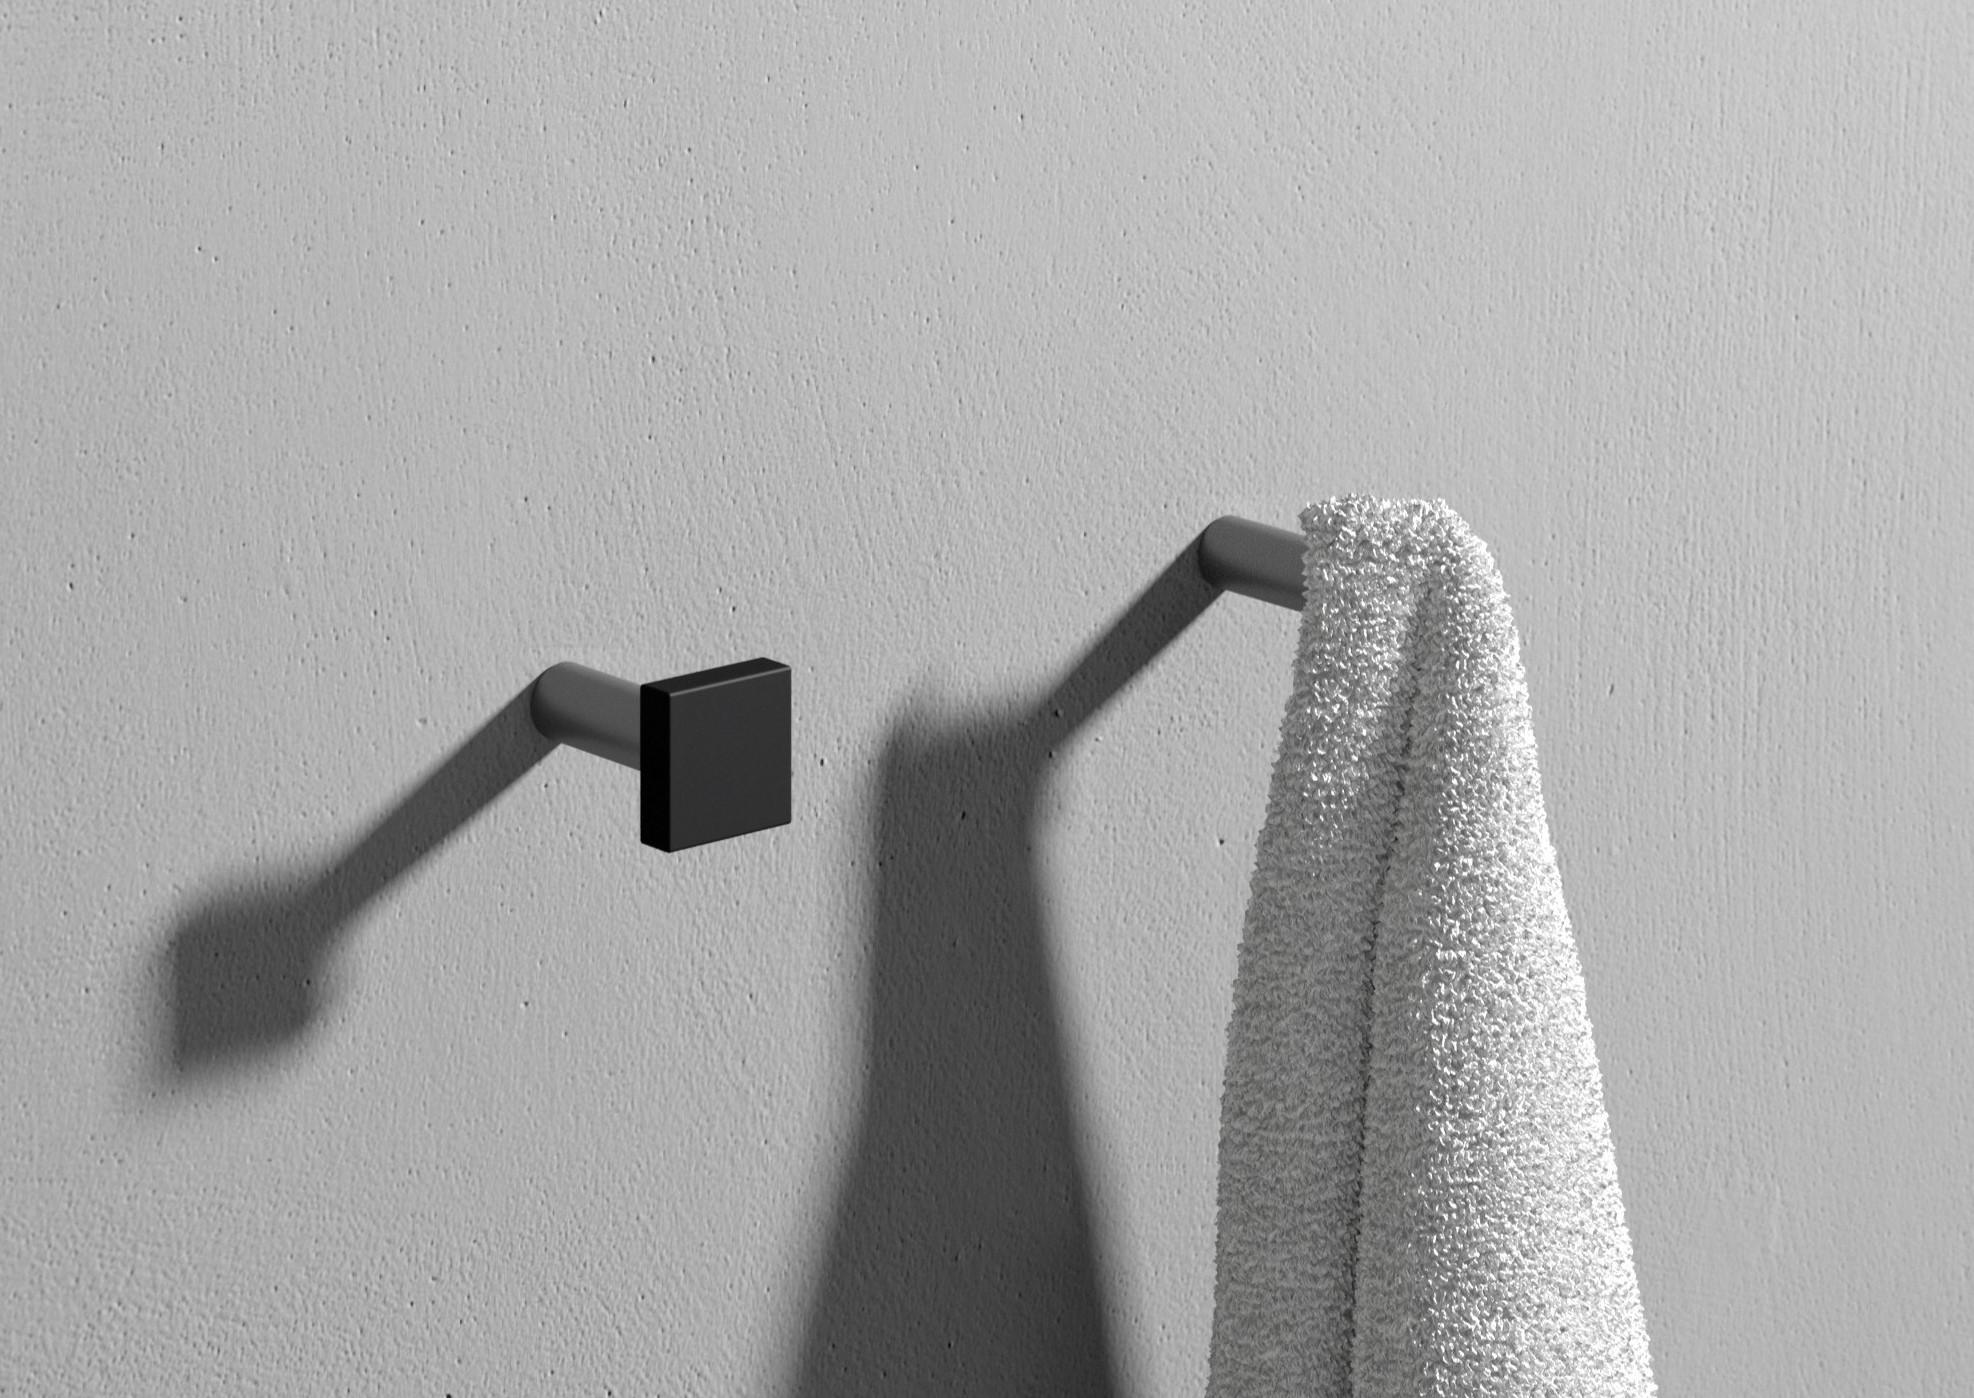 STONE-Towel-rack-Rexa-Design-456925-rel3de04424